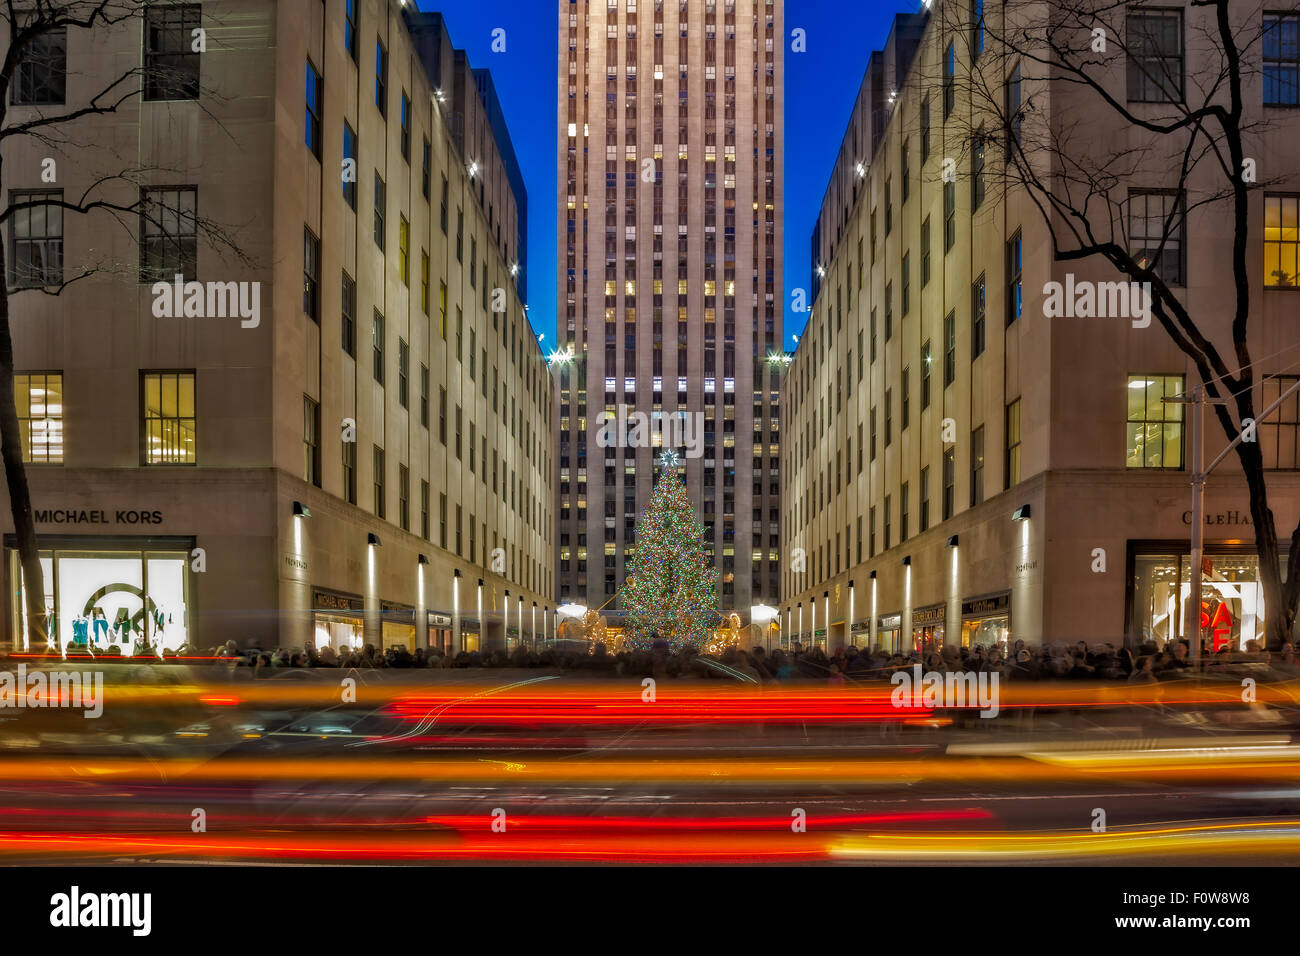 L'arbre de Noël du Rockefeller Center à New York. Banque D'Images